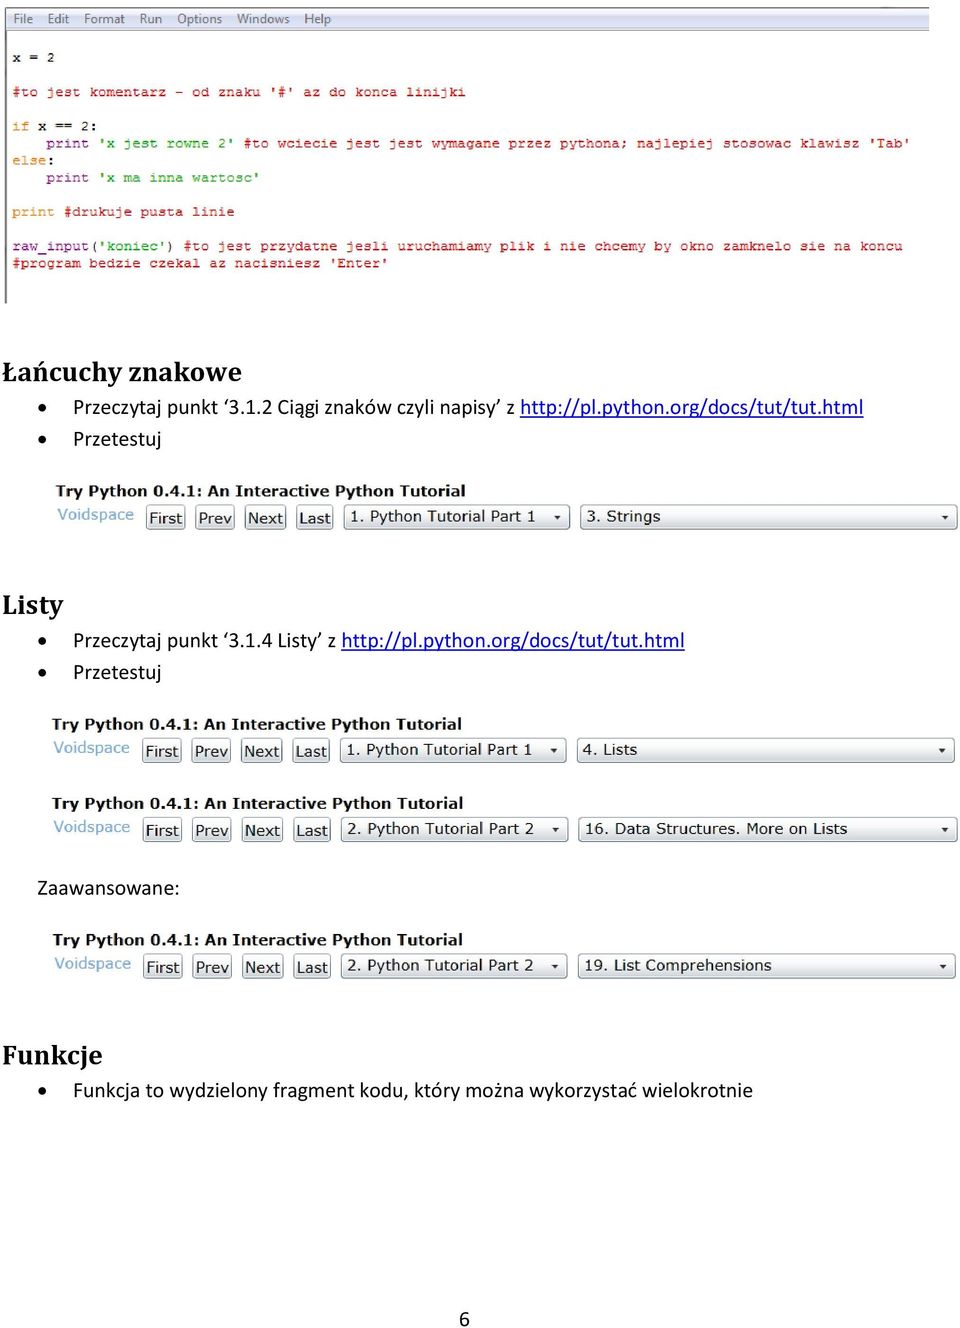 html Przetestuj Listy Przeczytaj punkt 3.1.4 Listy z http://pl.python.